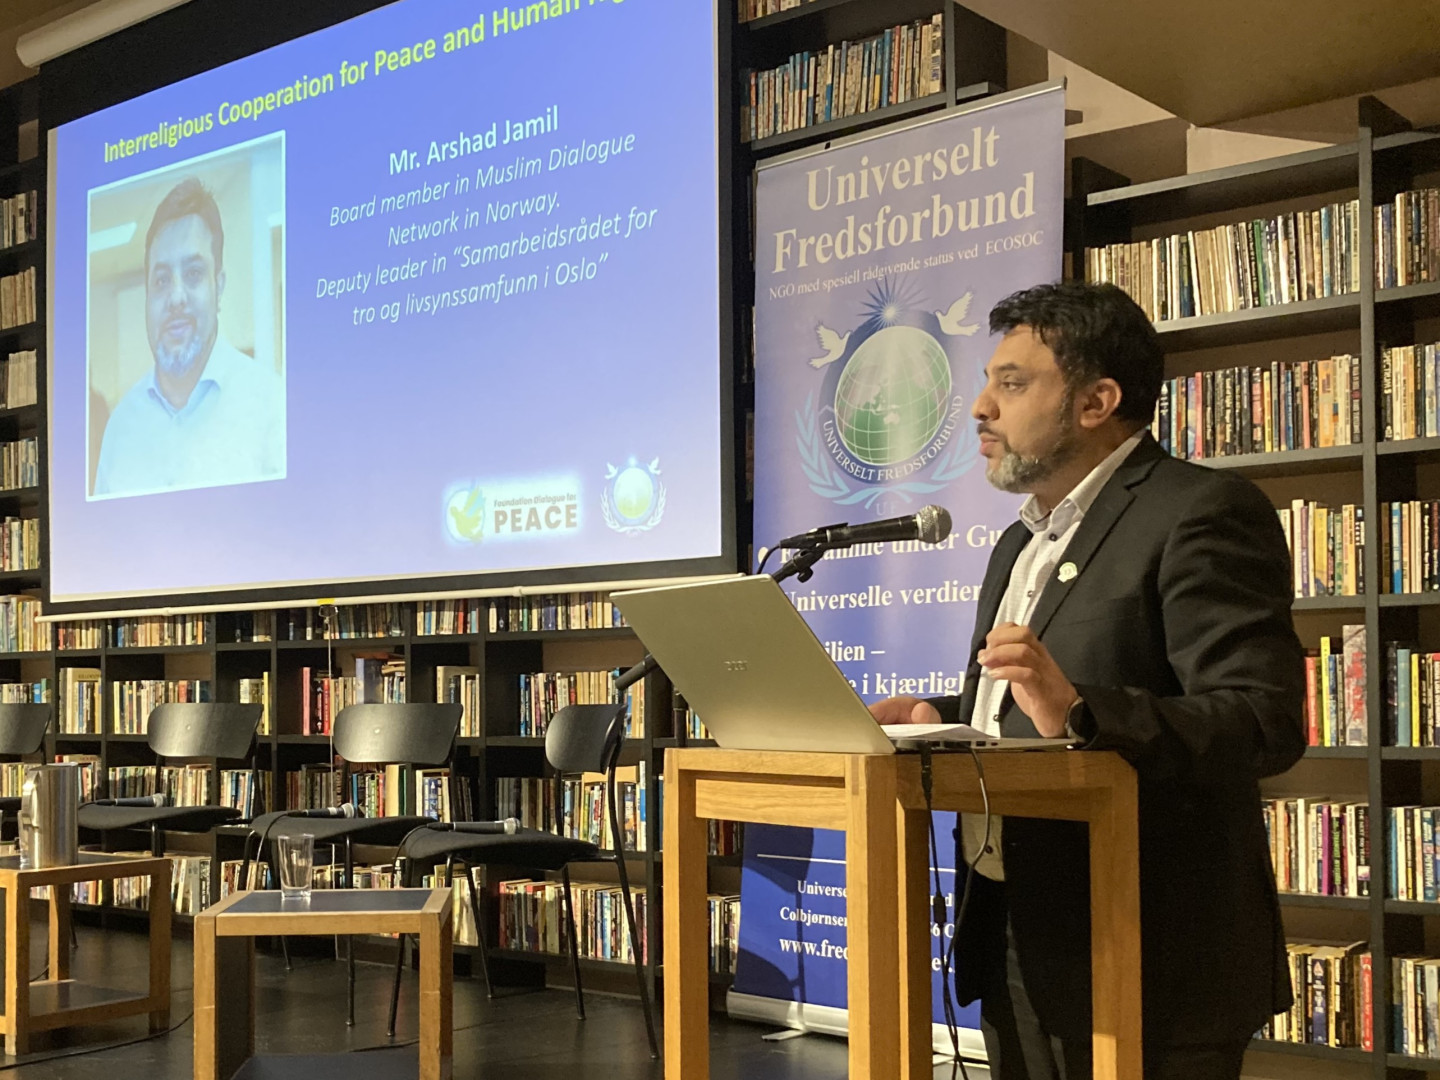 Arshad Jamil deputy leader Muslim Dialoge Network in Norway